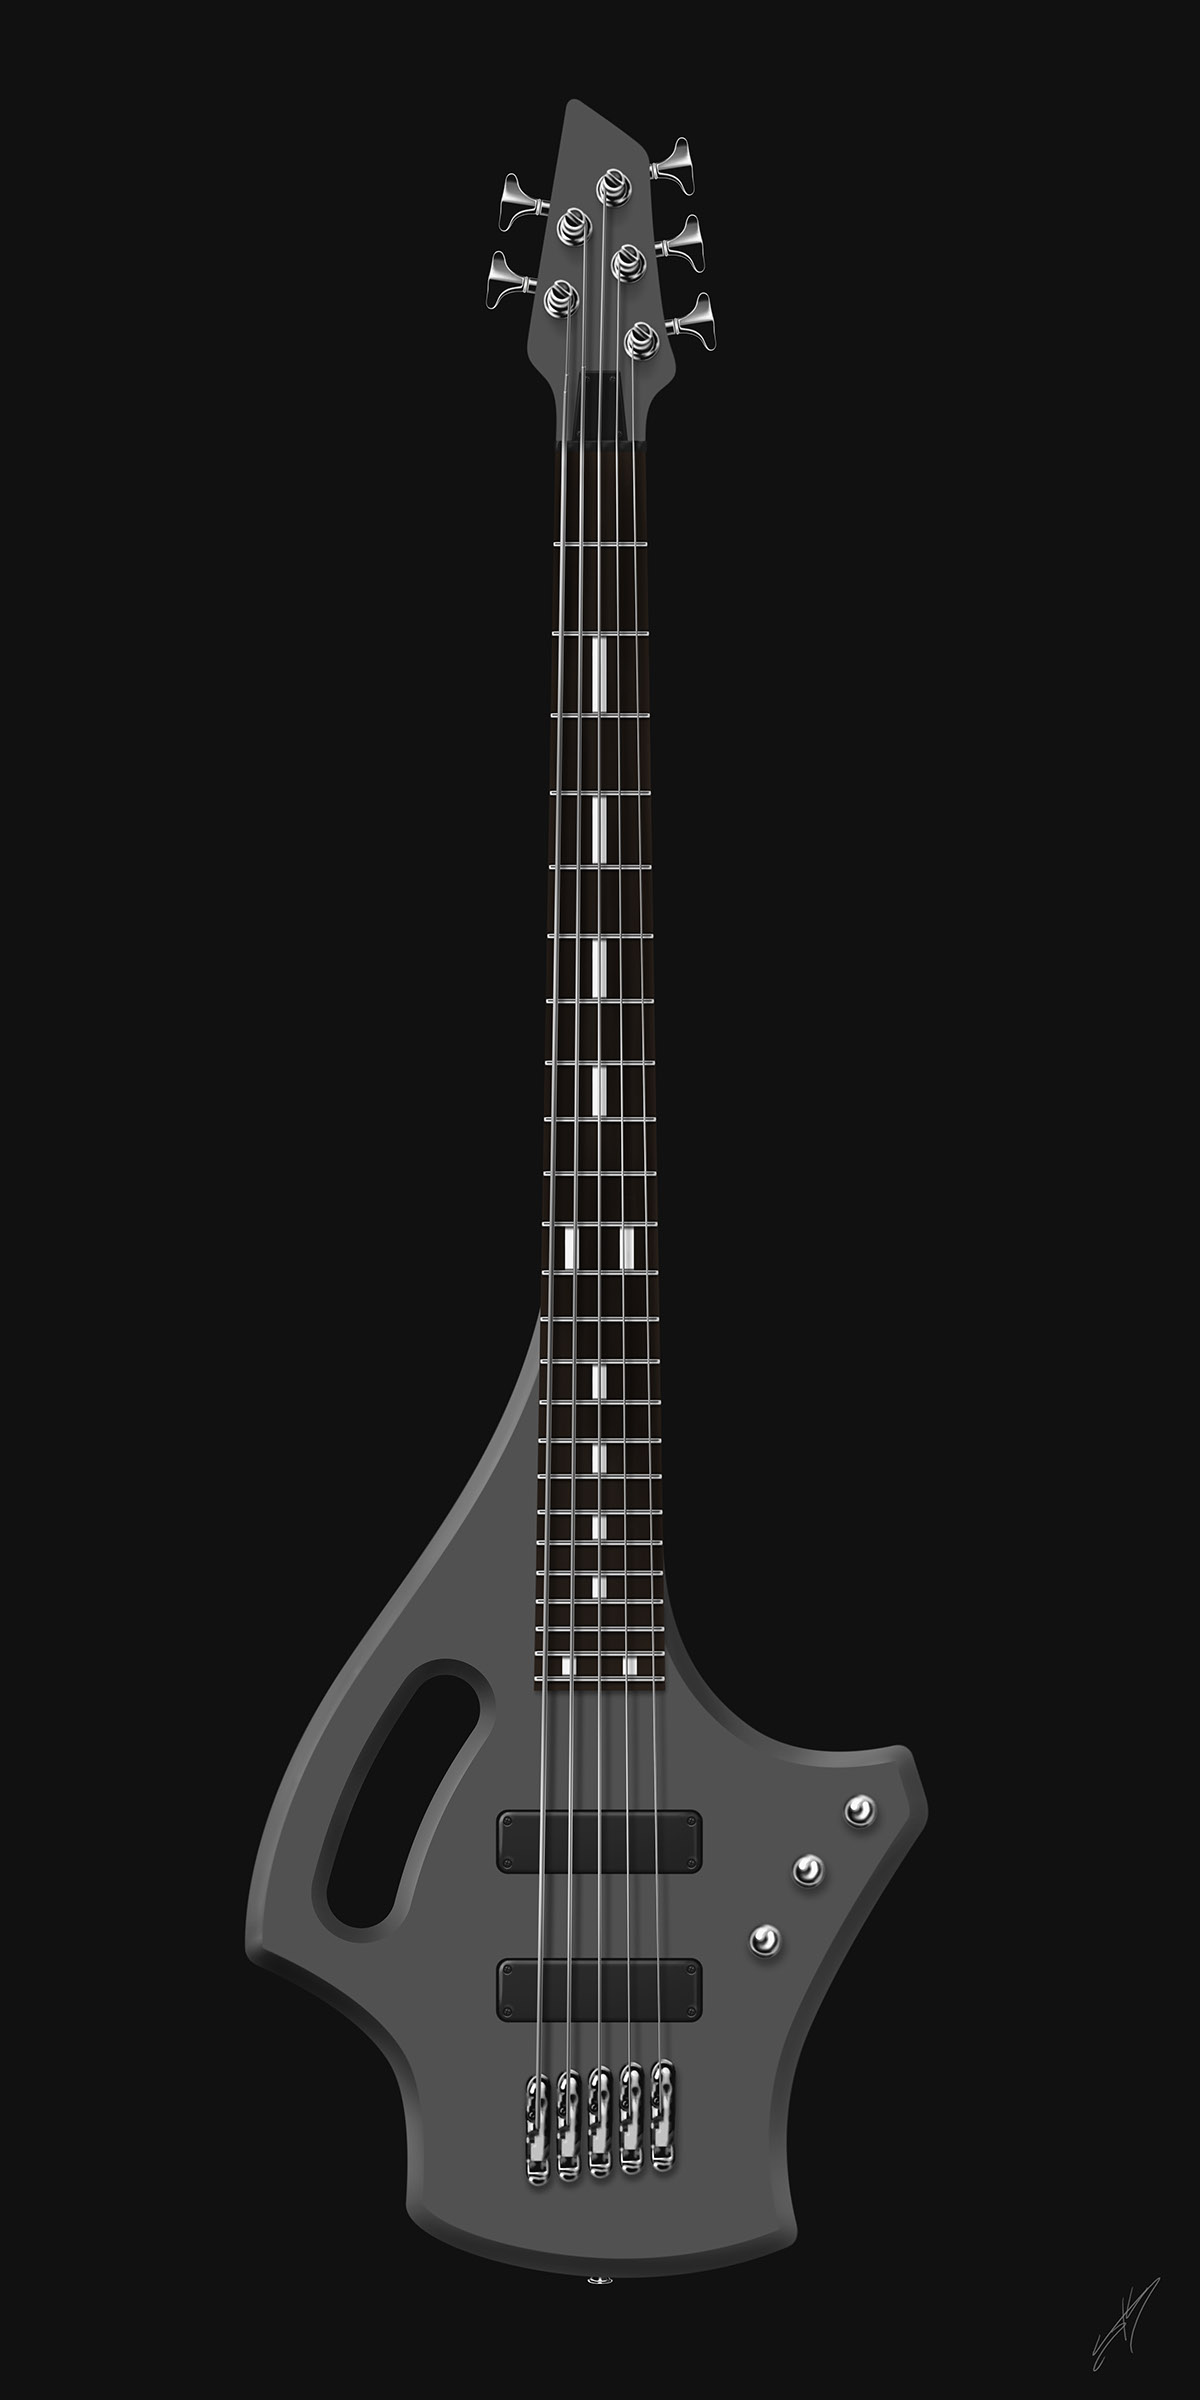 guitar guitars design concept shred rock jam sketch rendering